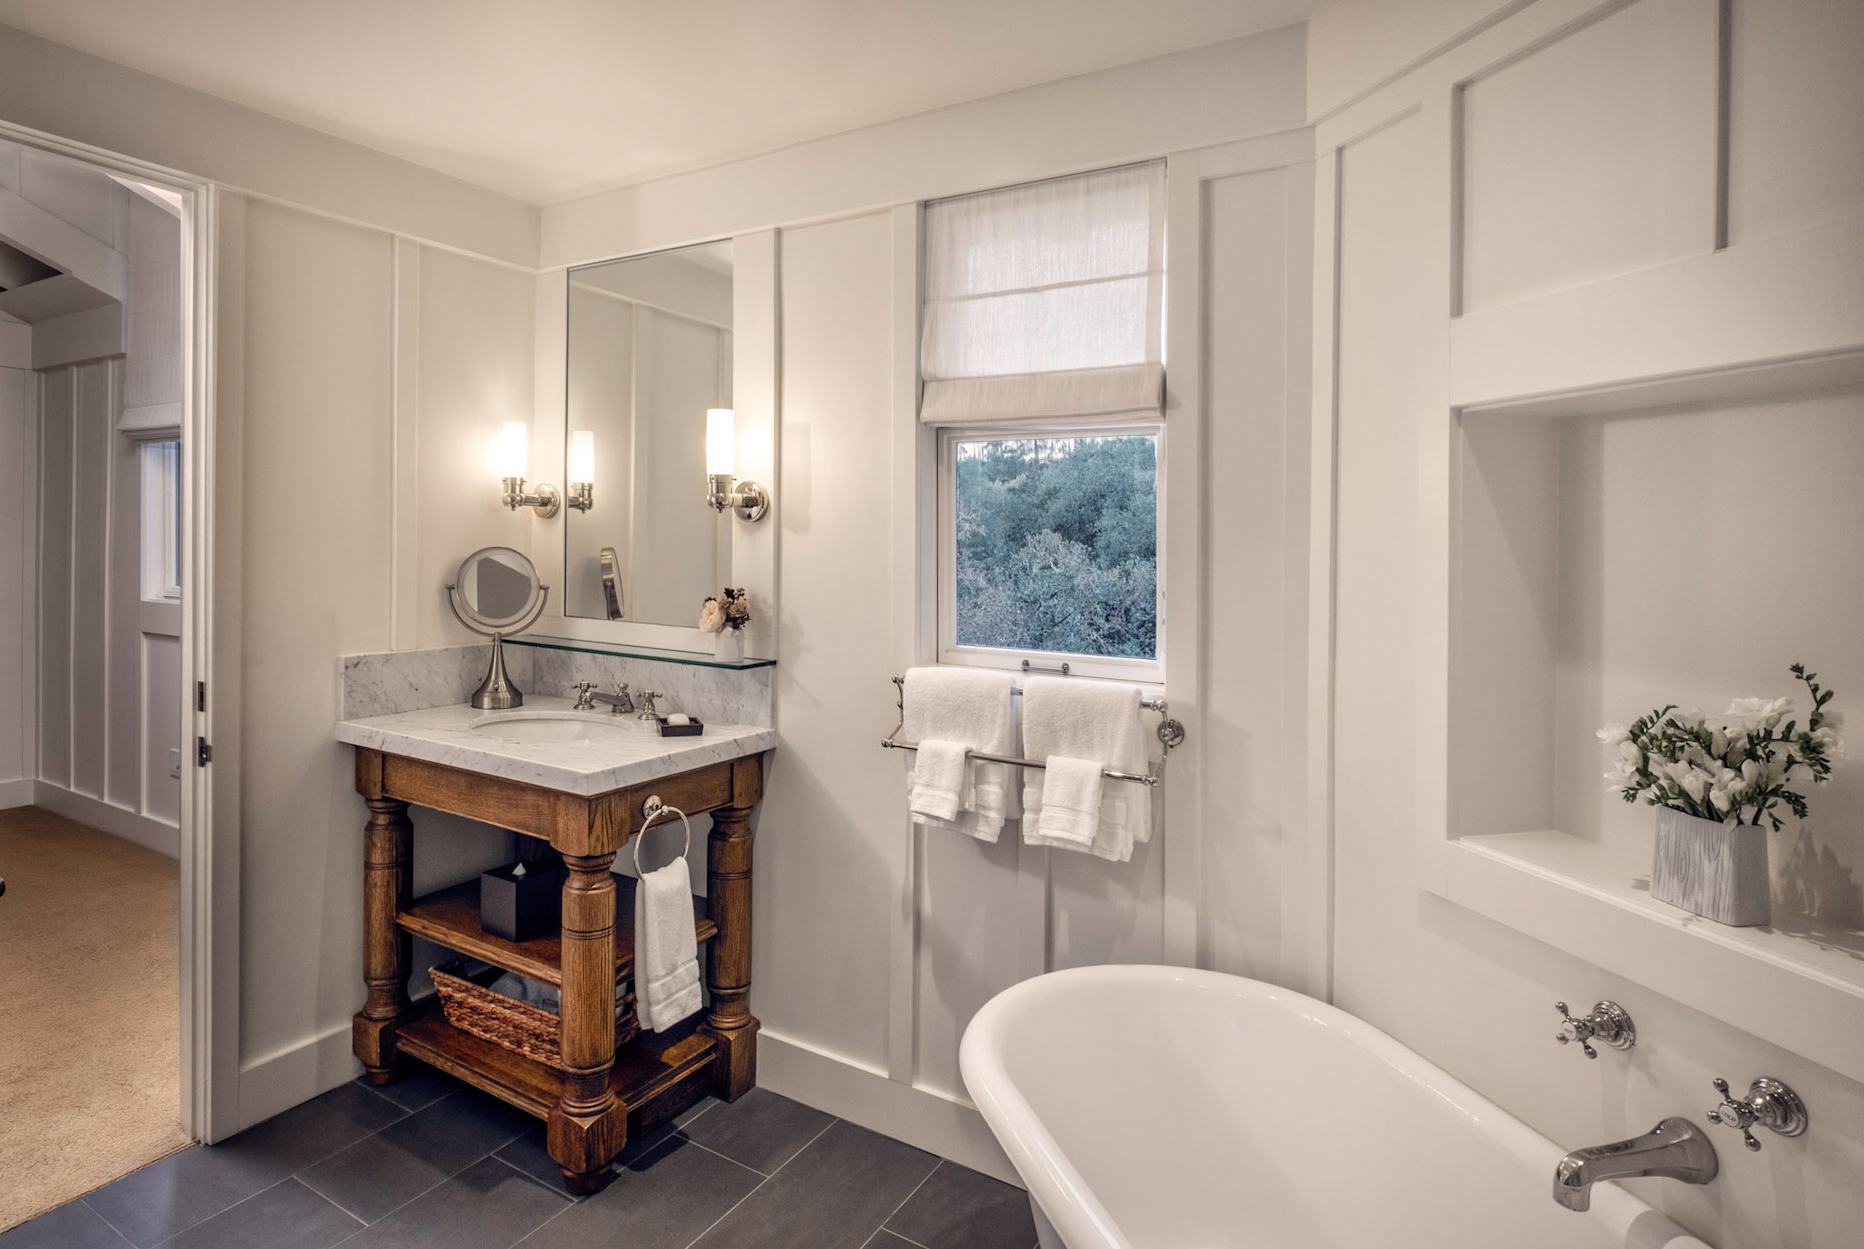 Treetop Room bathroom with deep soaking tub and single vanity